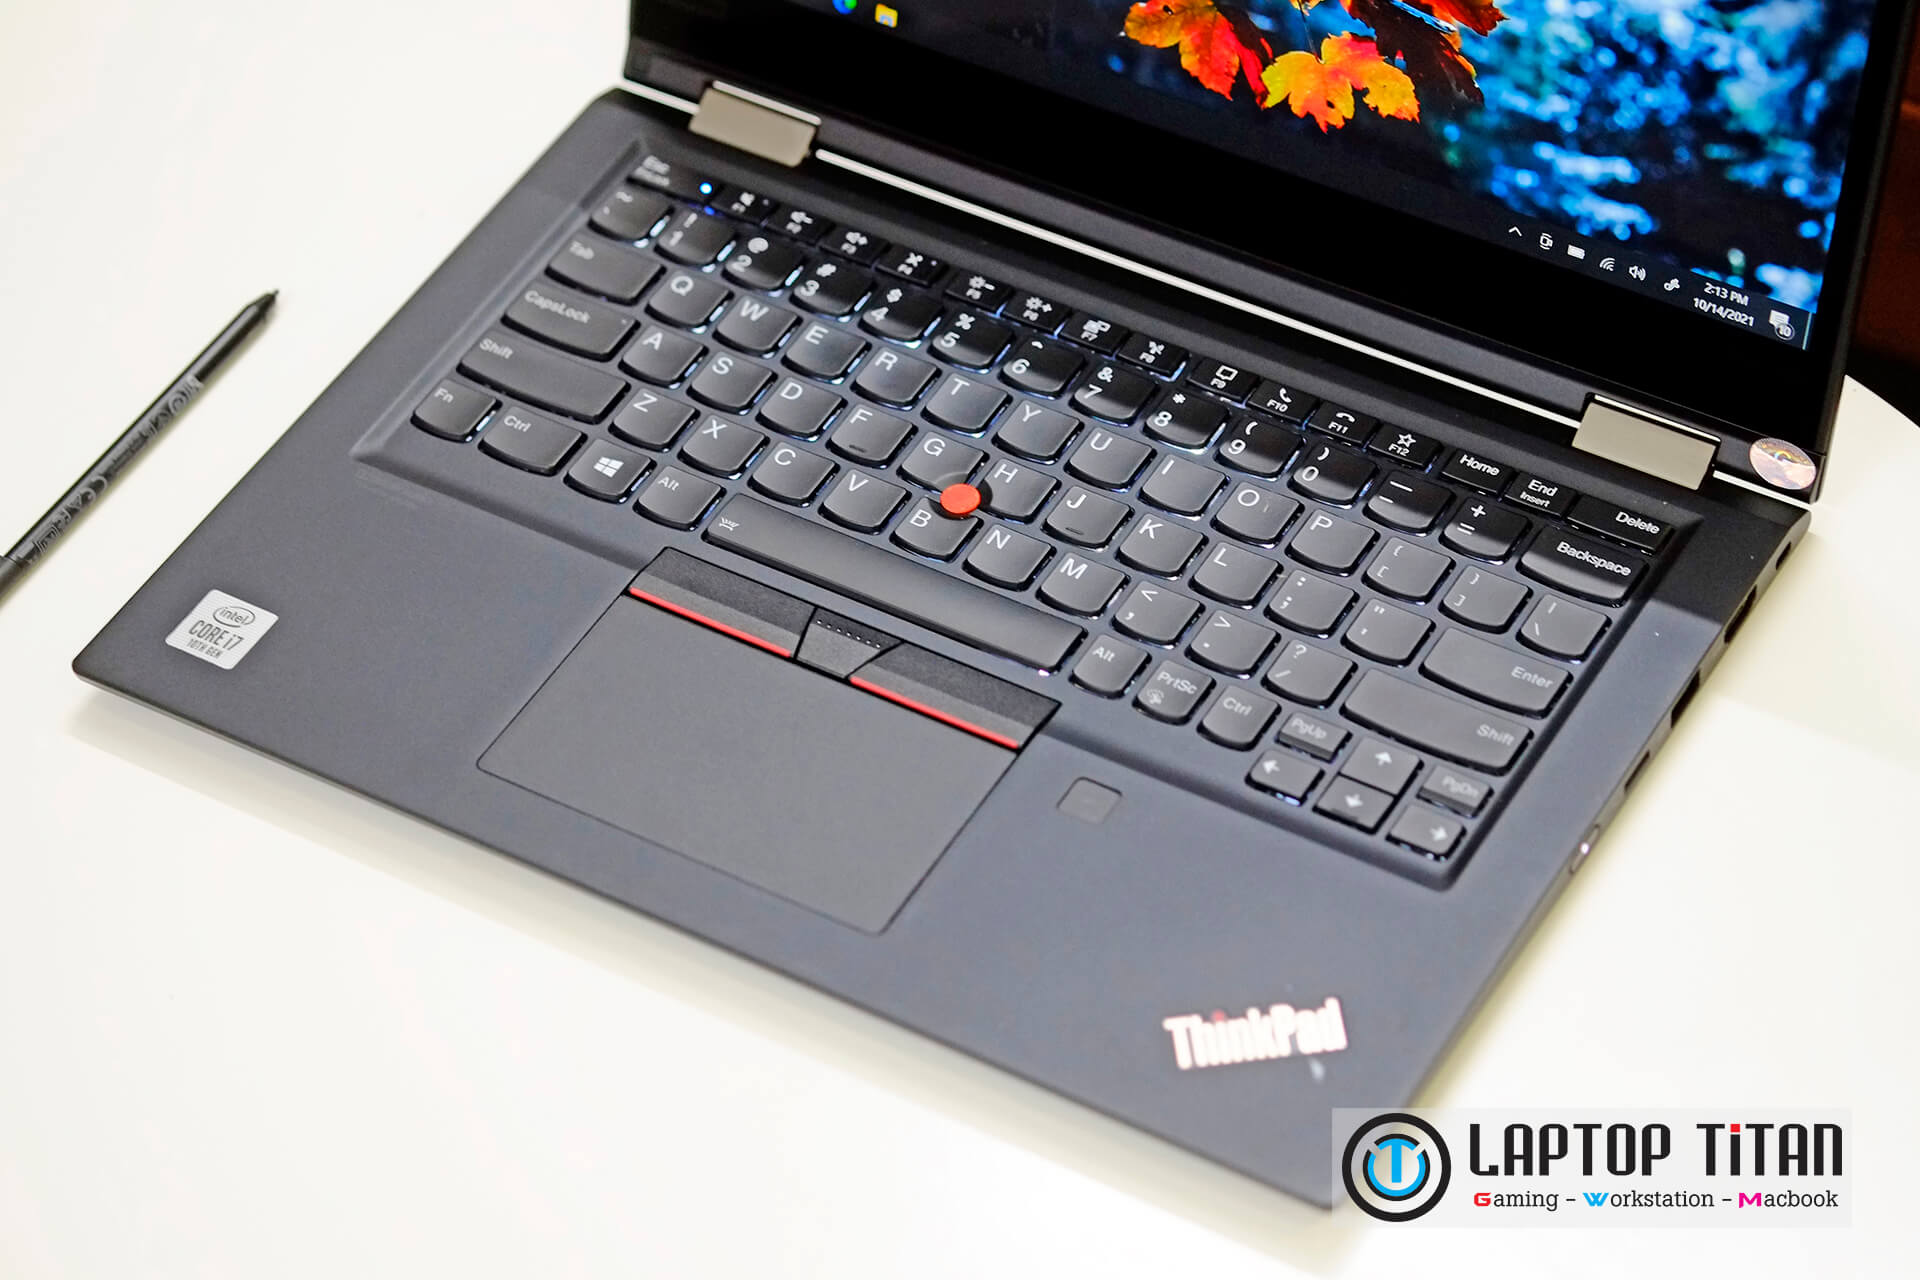 Lenovo Thinkpad X13 Yoga Laptoptitan 09